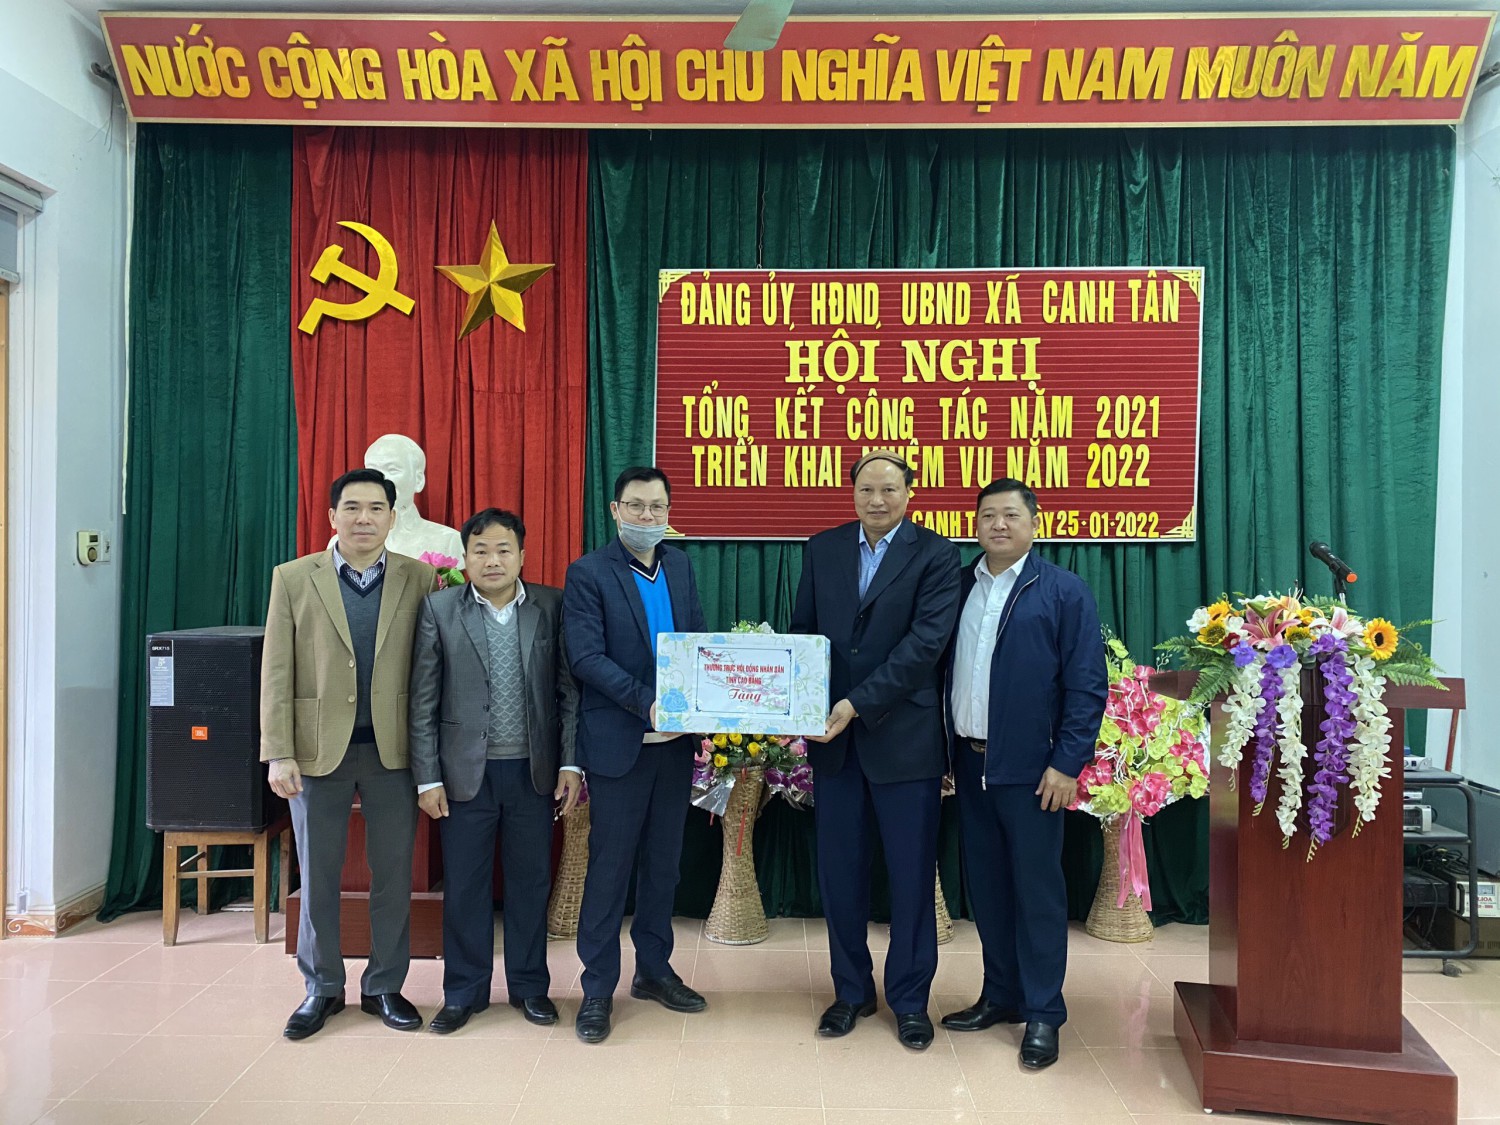 Đoàn công tác tặng quà Đảng ủy, HĐND, UBND, UB MTTQ xã Canh Tân, huyện Thạch An